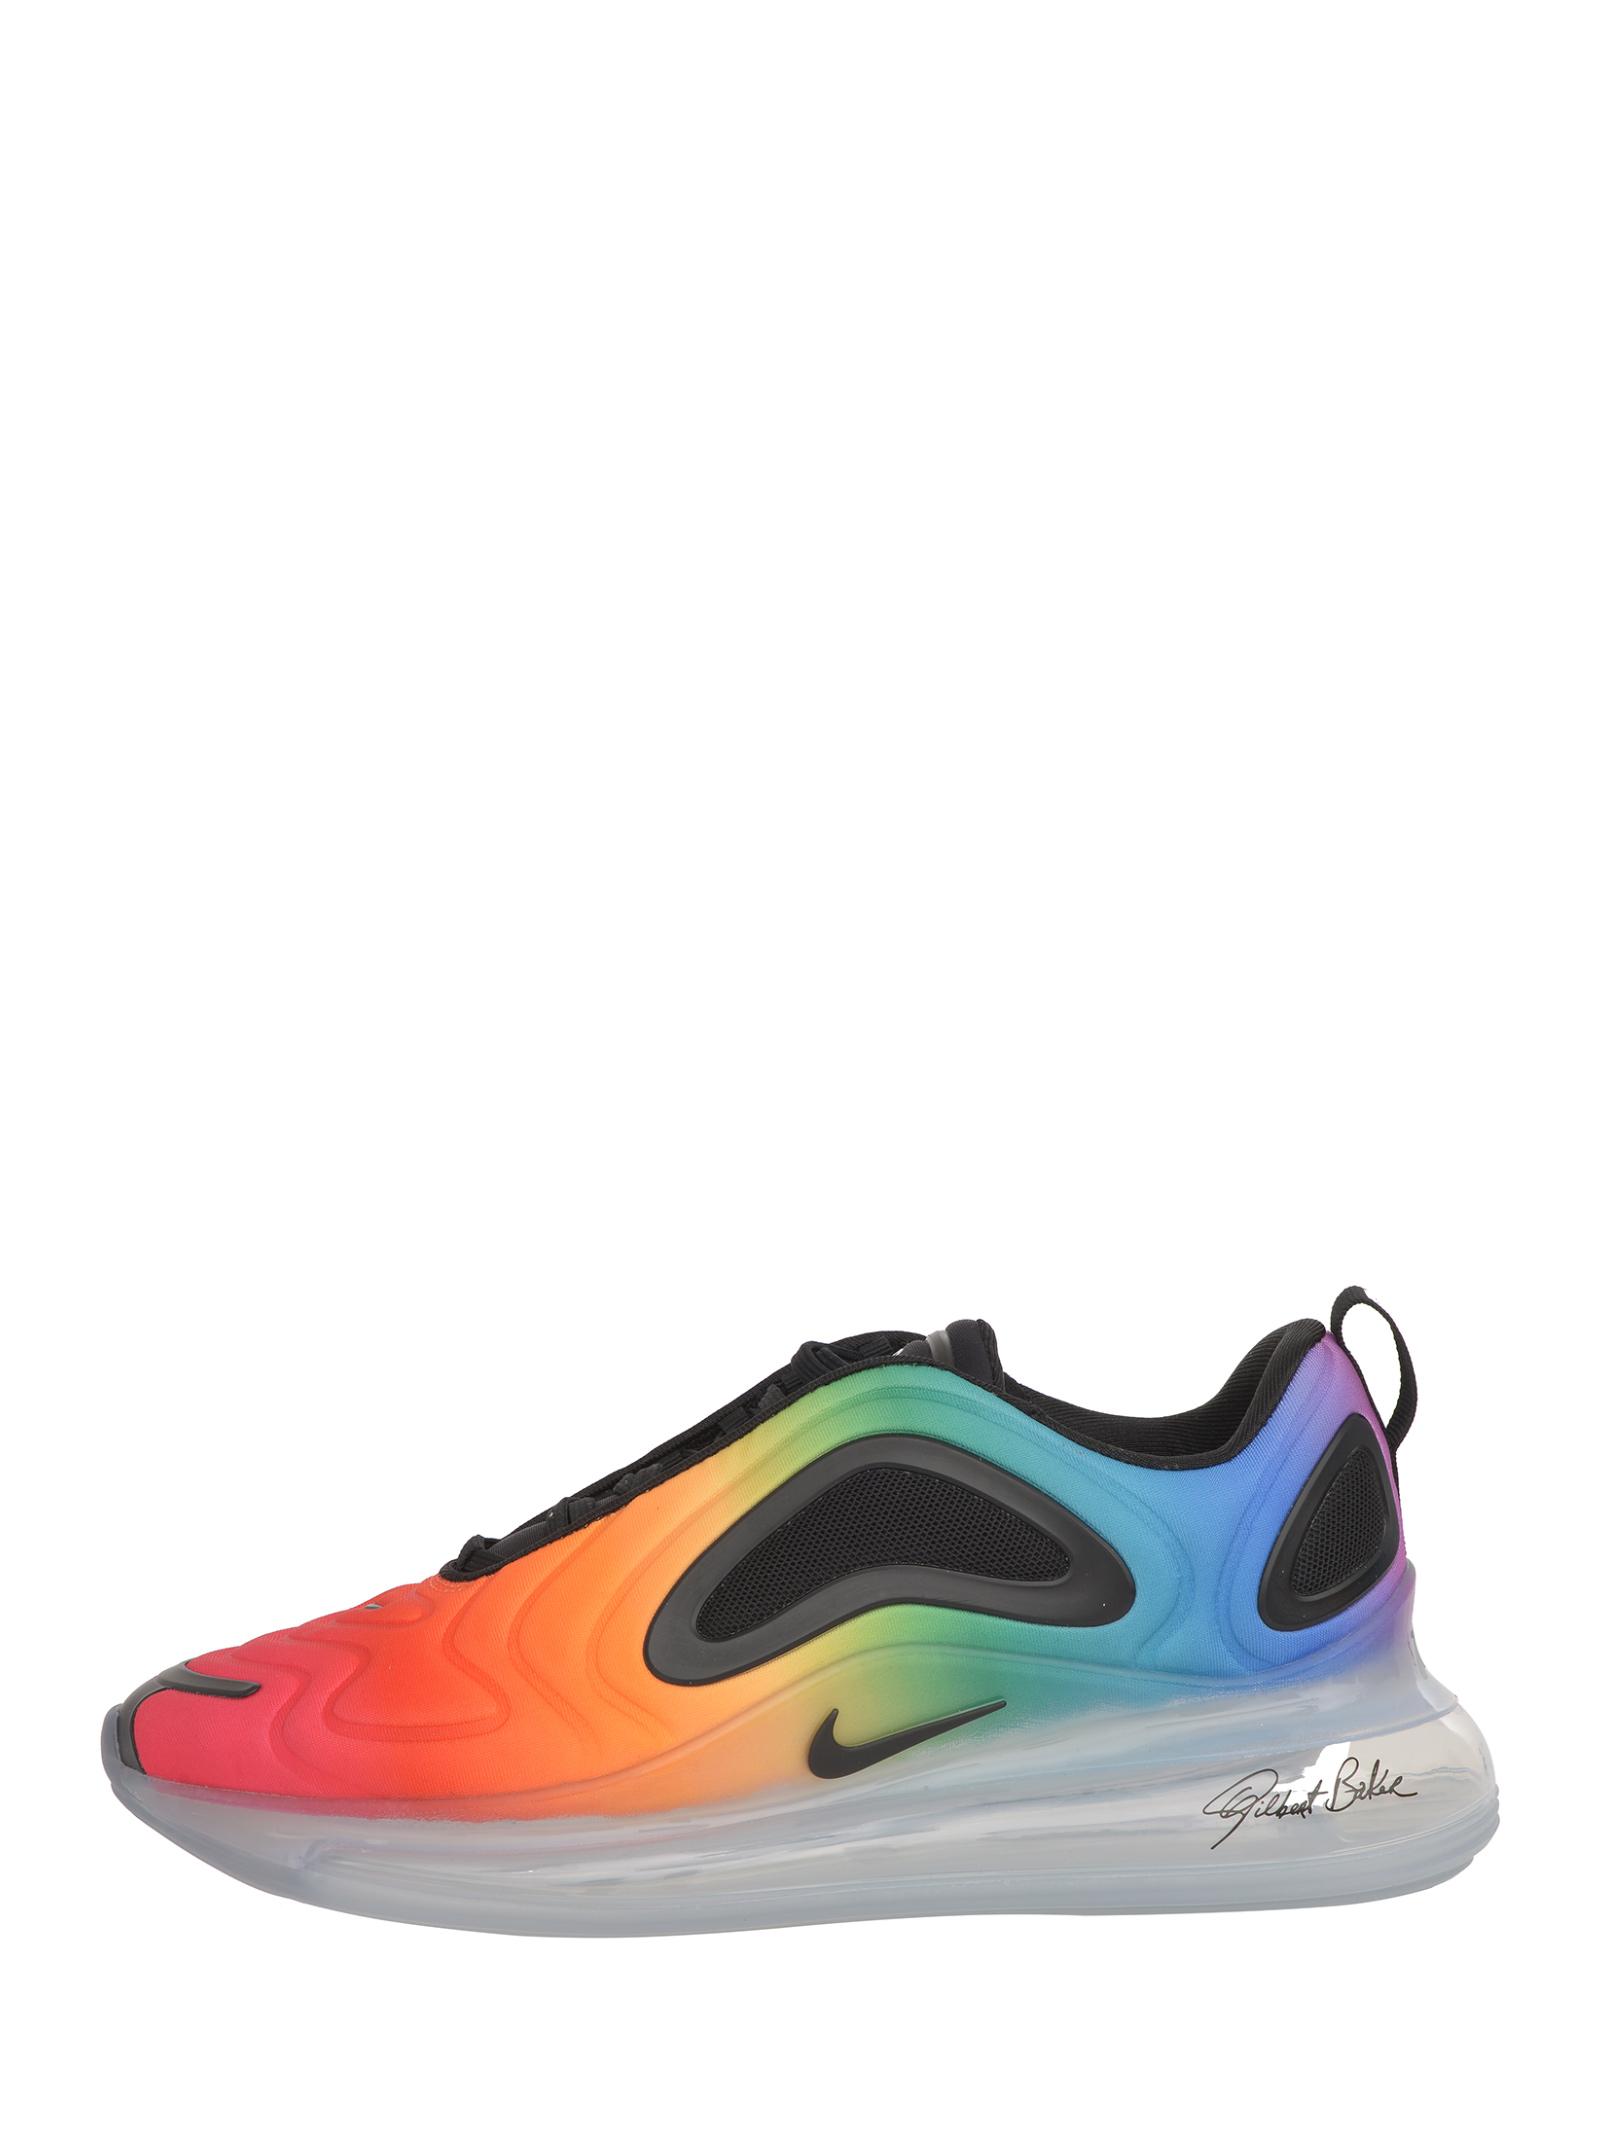 Sneakers Air Max 720 BETRUE nei colori dell'arcobaleno con unità